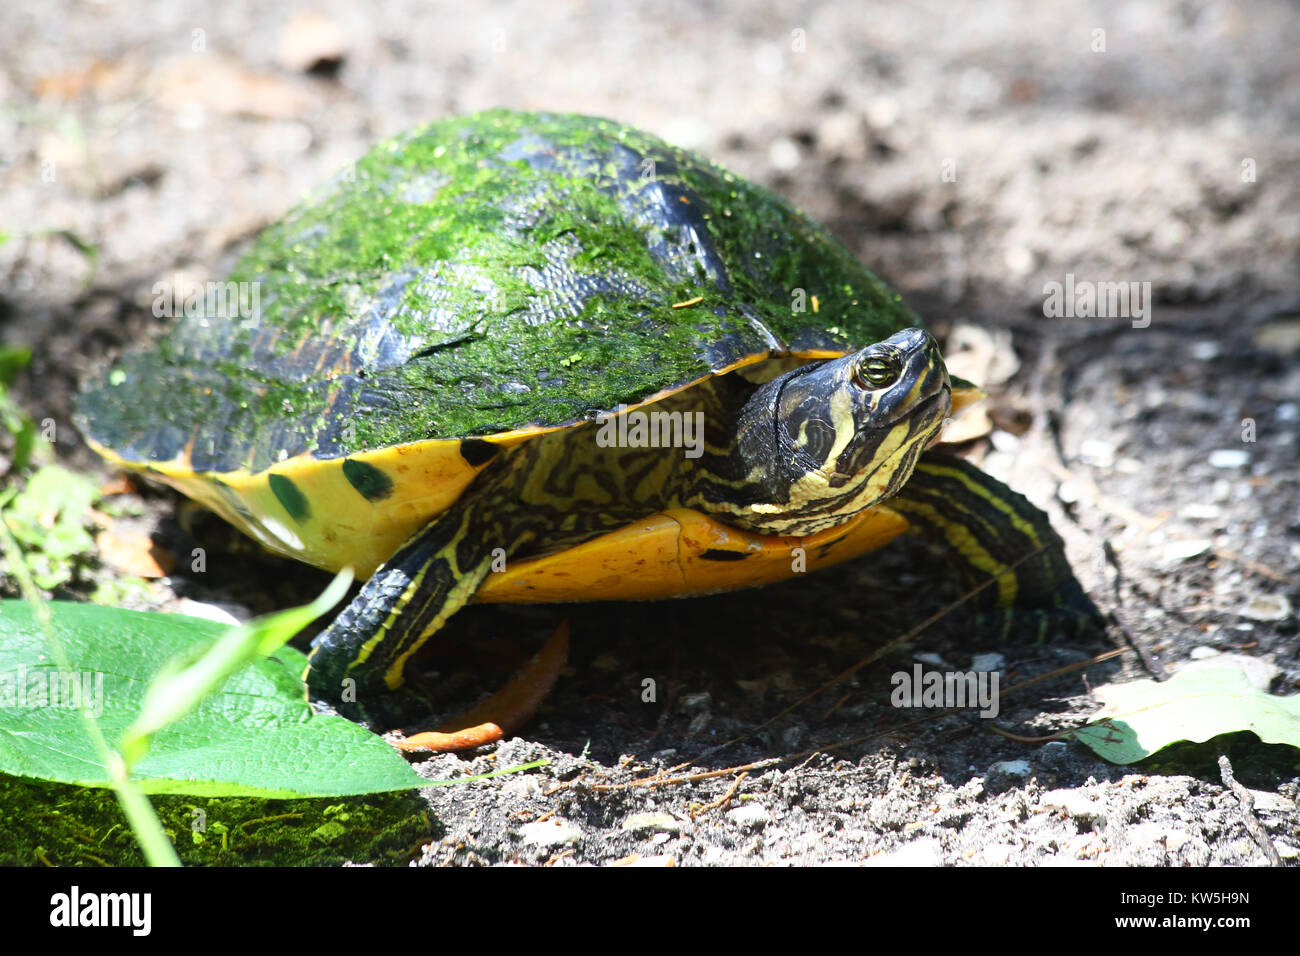 Un ventre giallo slider turtle smette di prendere uno sguardo intorno. Foto Stock